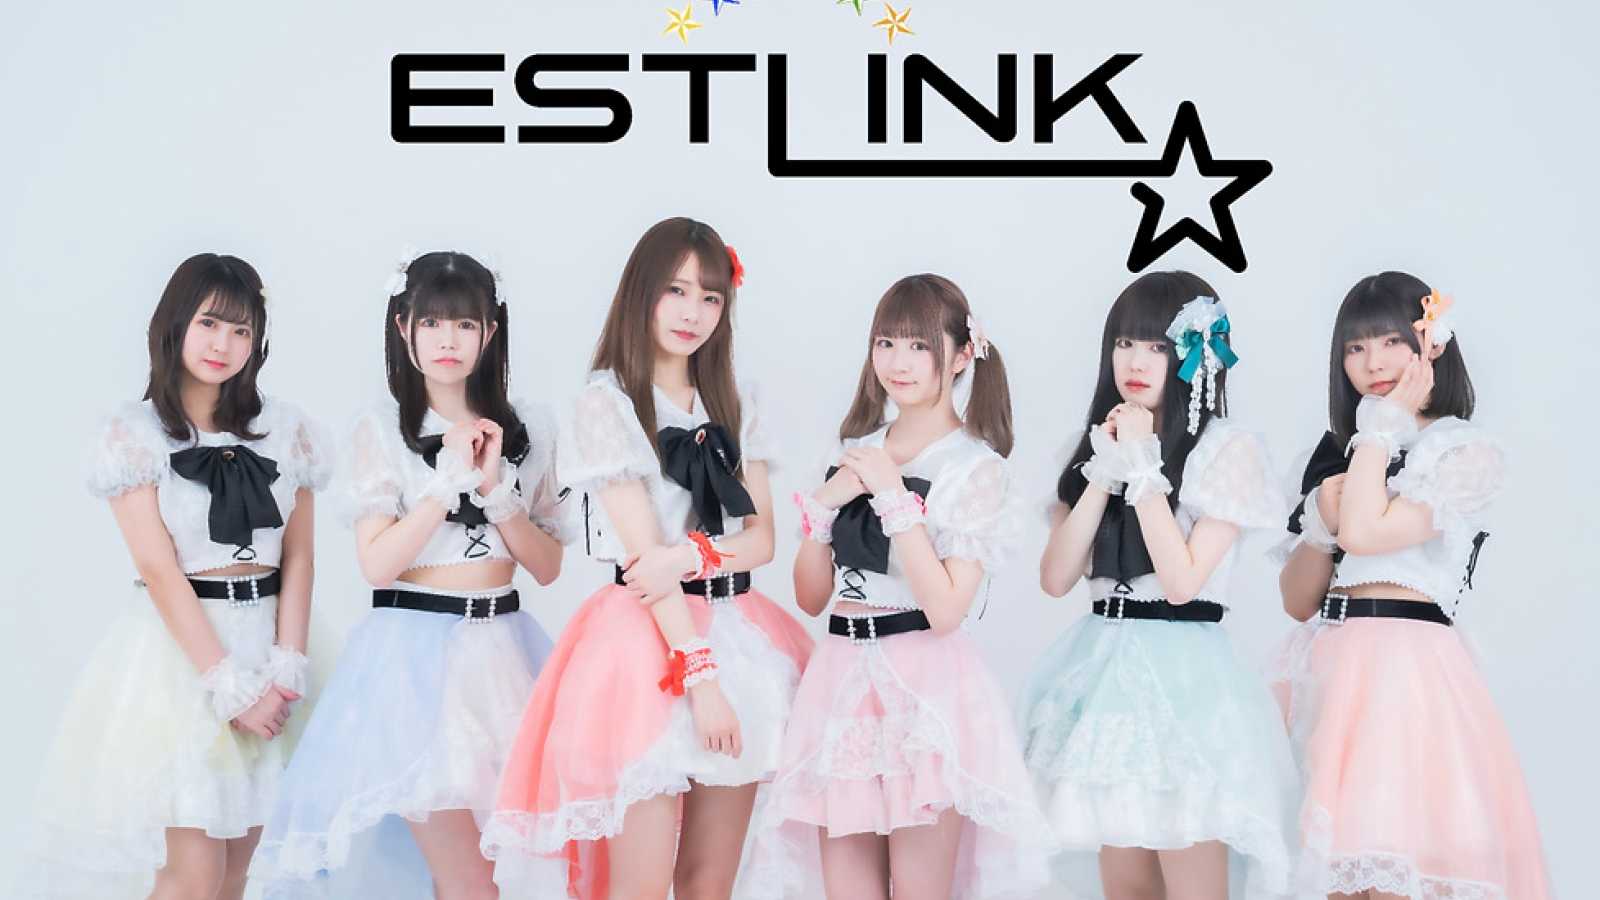 Erste Single von ESTLINK☆ © ESTLINK☆ all rights reserved.